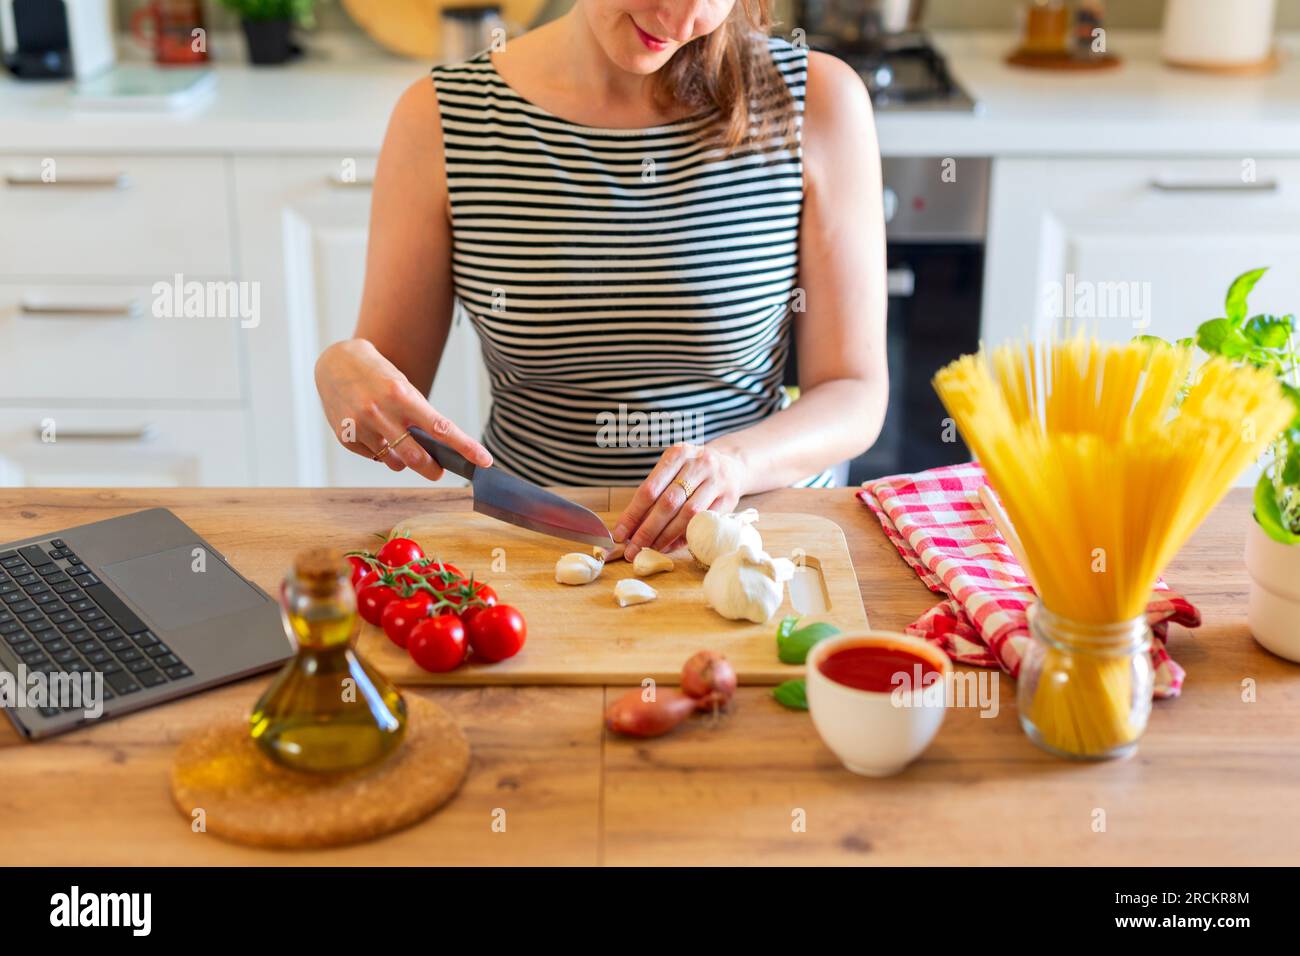 Eine junge, wunderschöne hispanische Frau, die italienische Pasta zubereitet und sich das Online-Rezept auf einem Laptop in der Küche ansieht Stockfoto